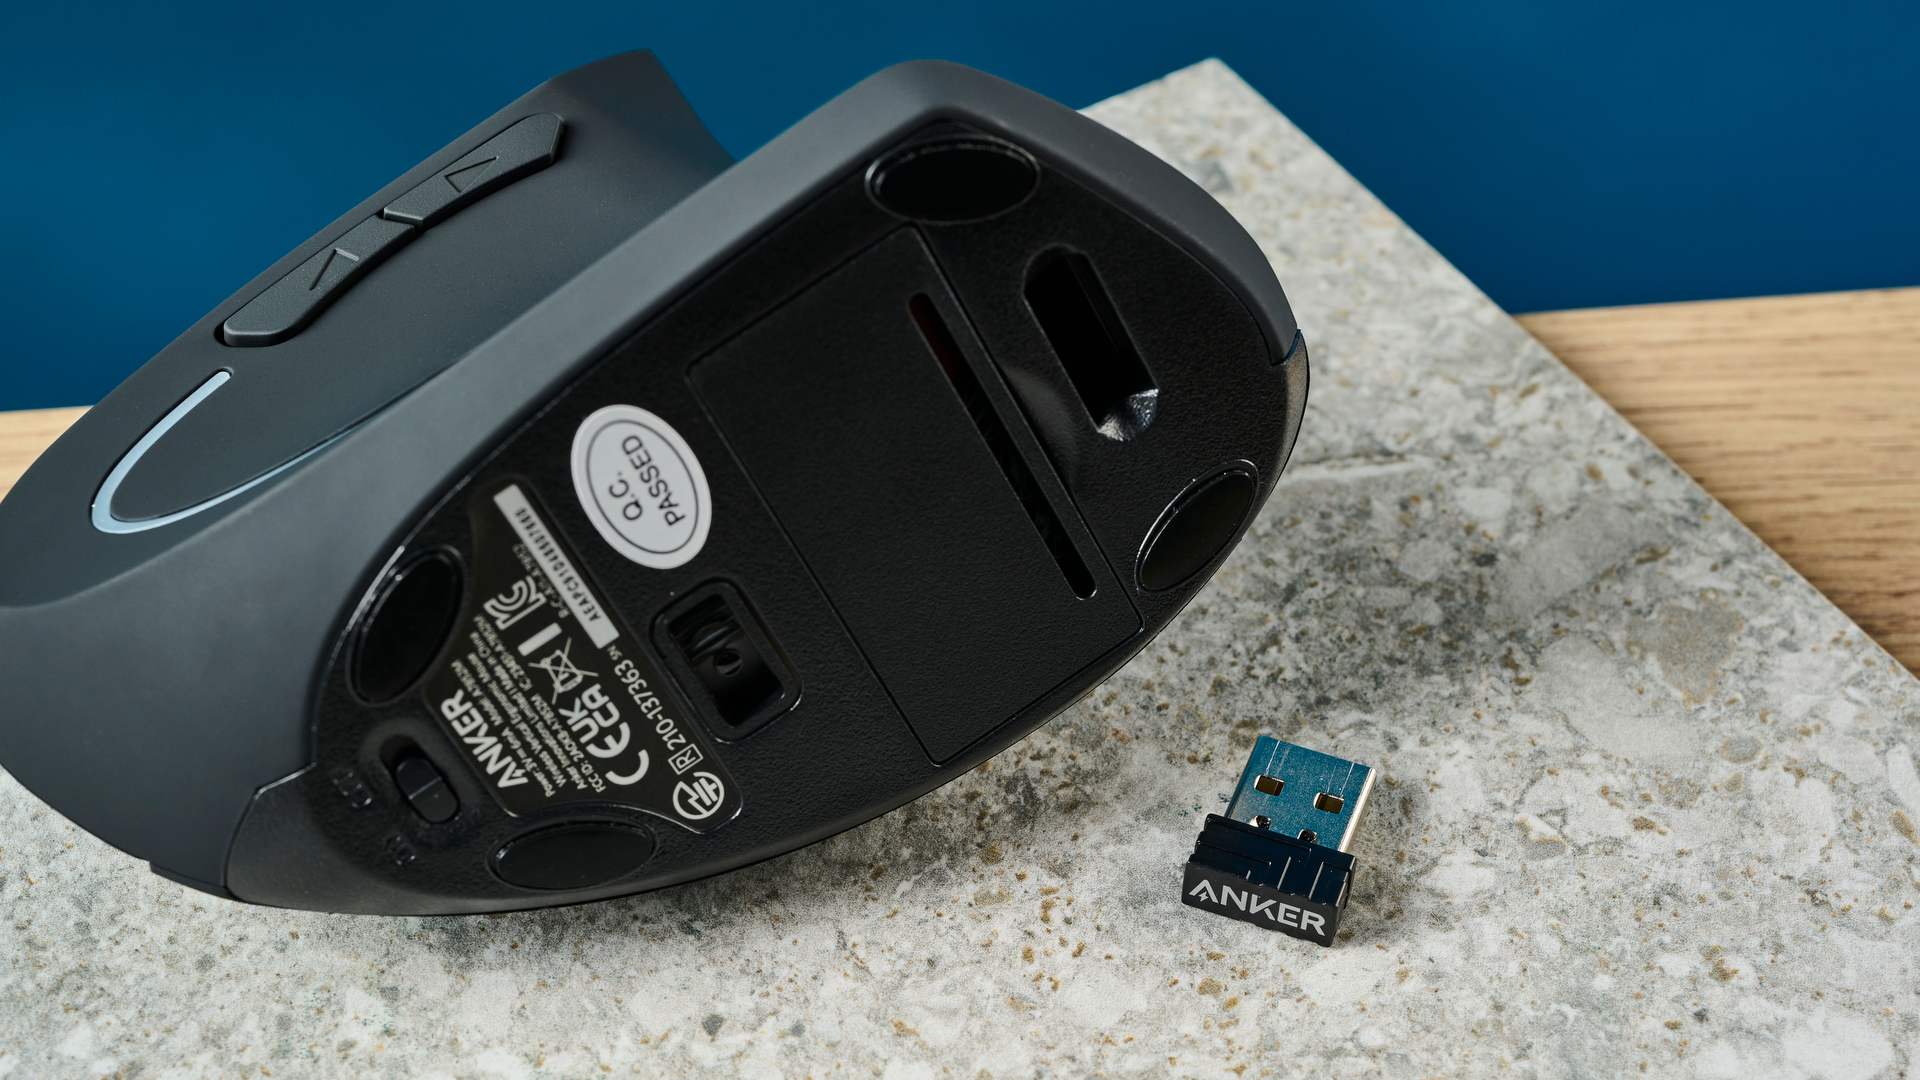 De Anker 2.4G Wireless Vertical Ergonomic Mouse op een stenen oppervlak met een blauwe muur op de achtergrond